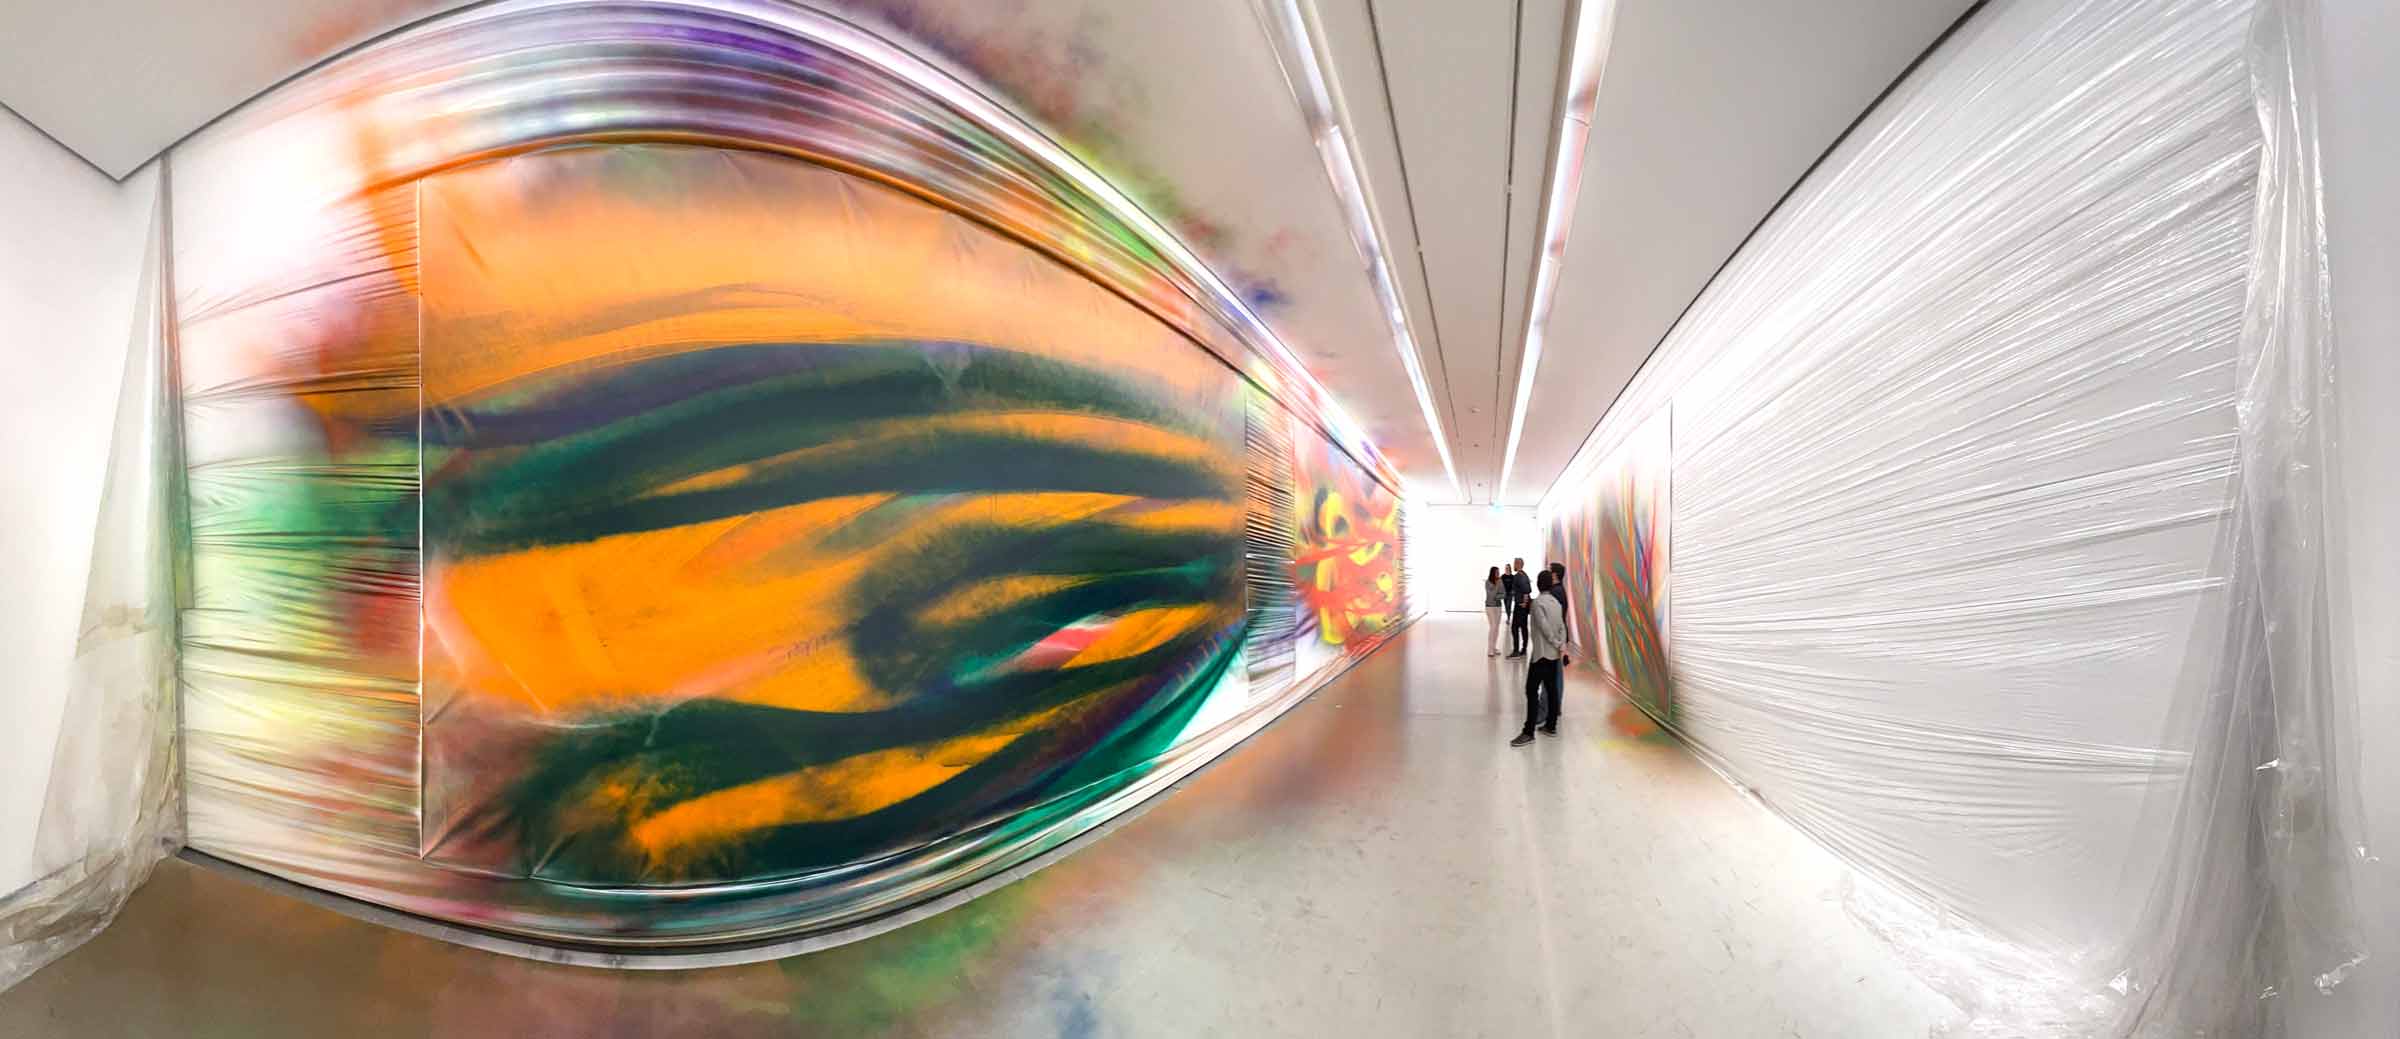 Ausstellungsraum im Weitwinkel mit bunten Kunstwerken und gewellten Folien an der Wand, auf denen sich die Farbe fortsetzt